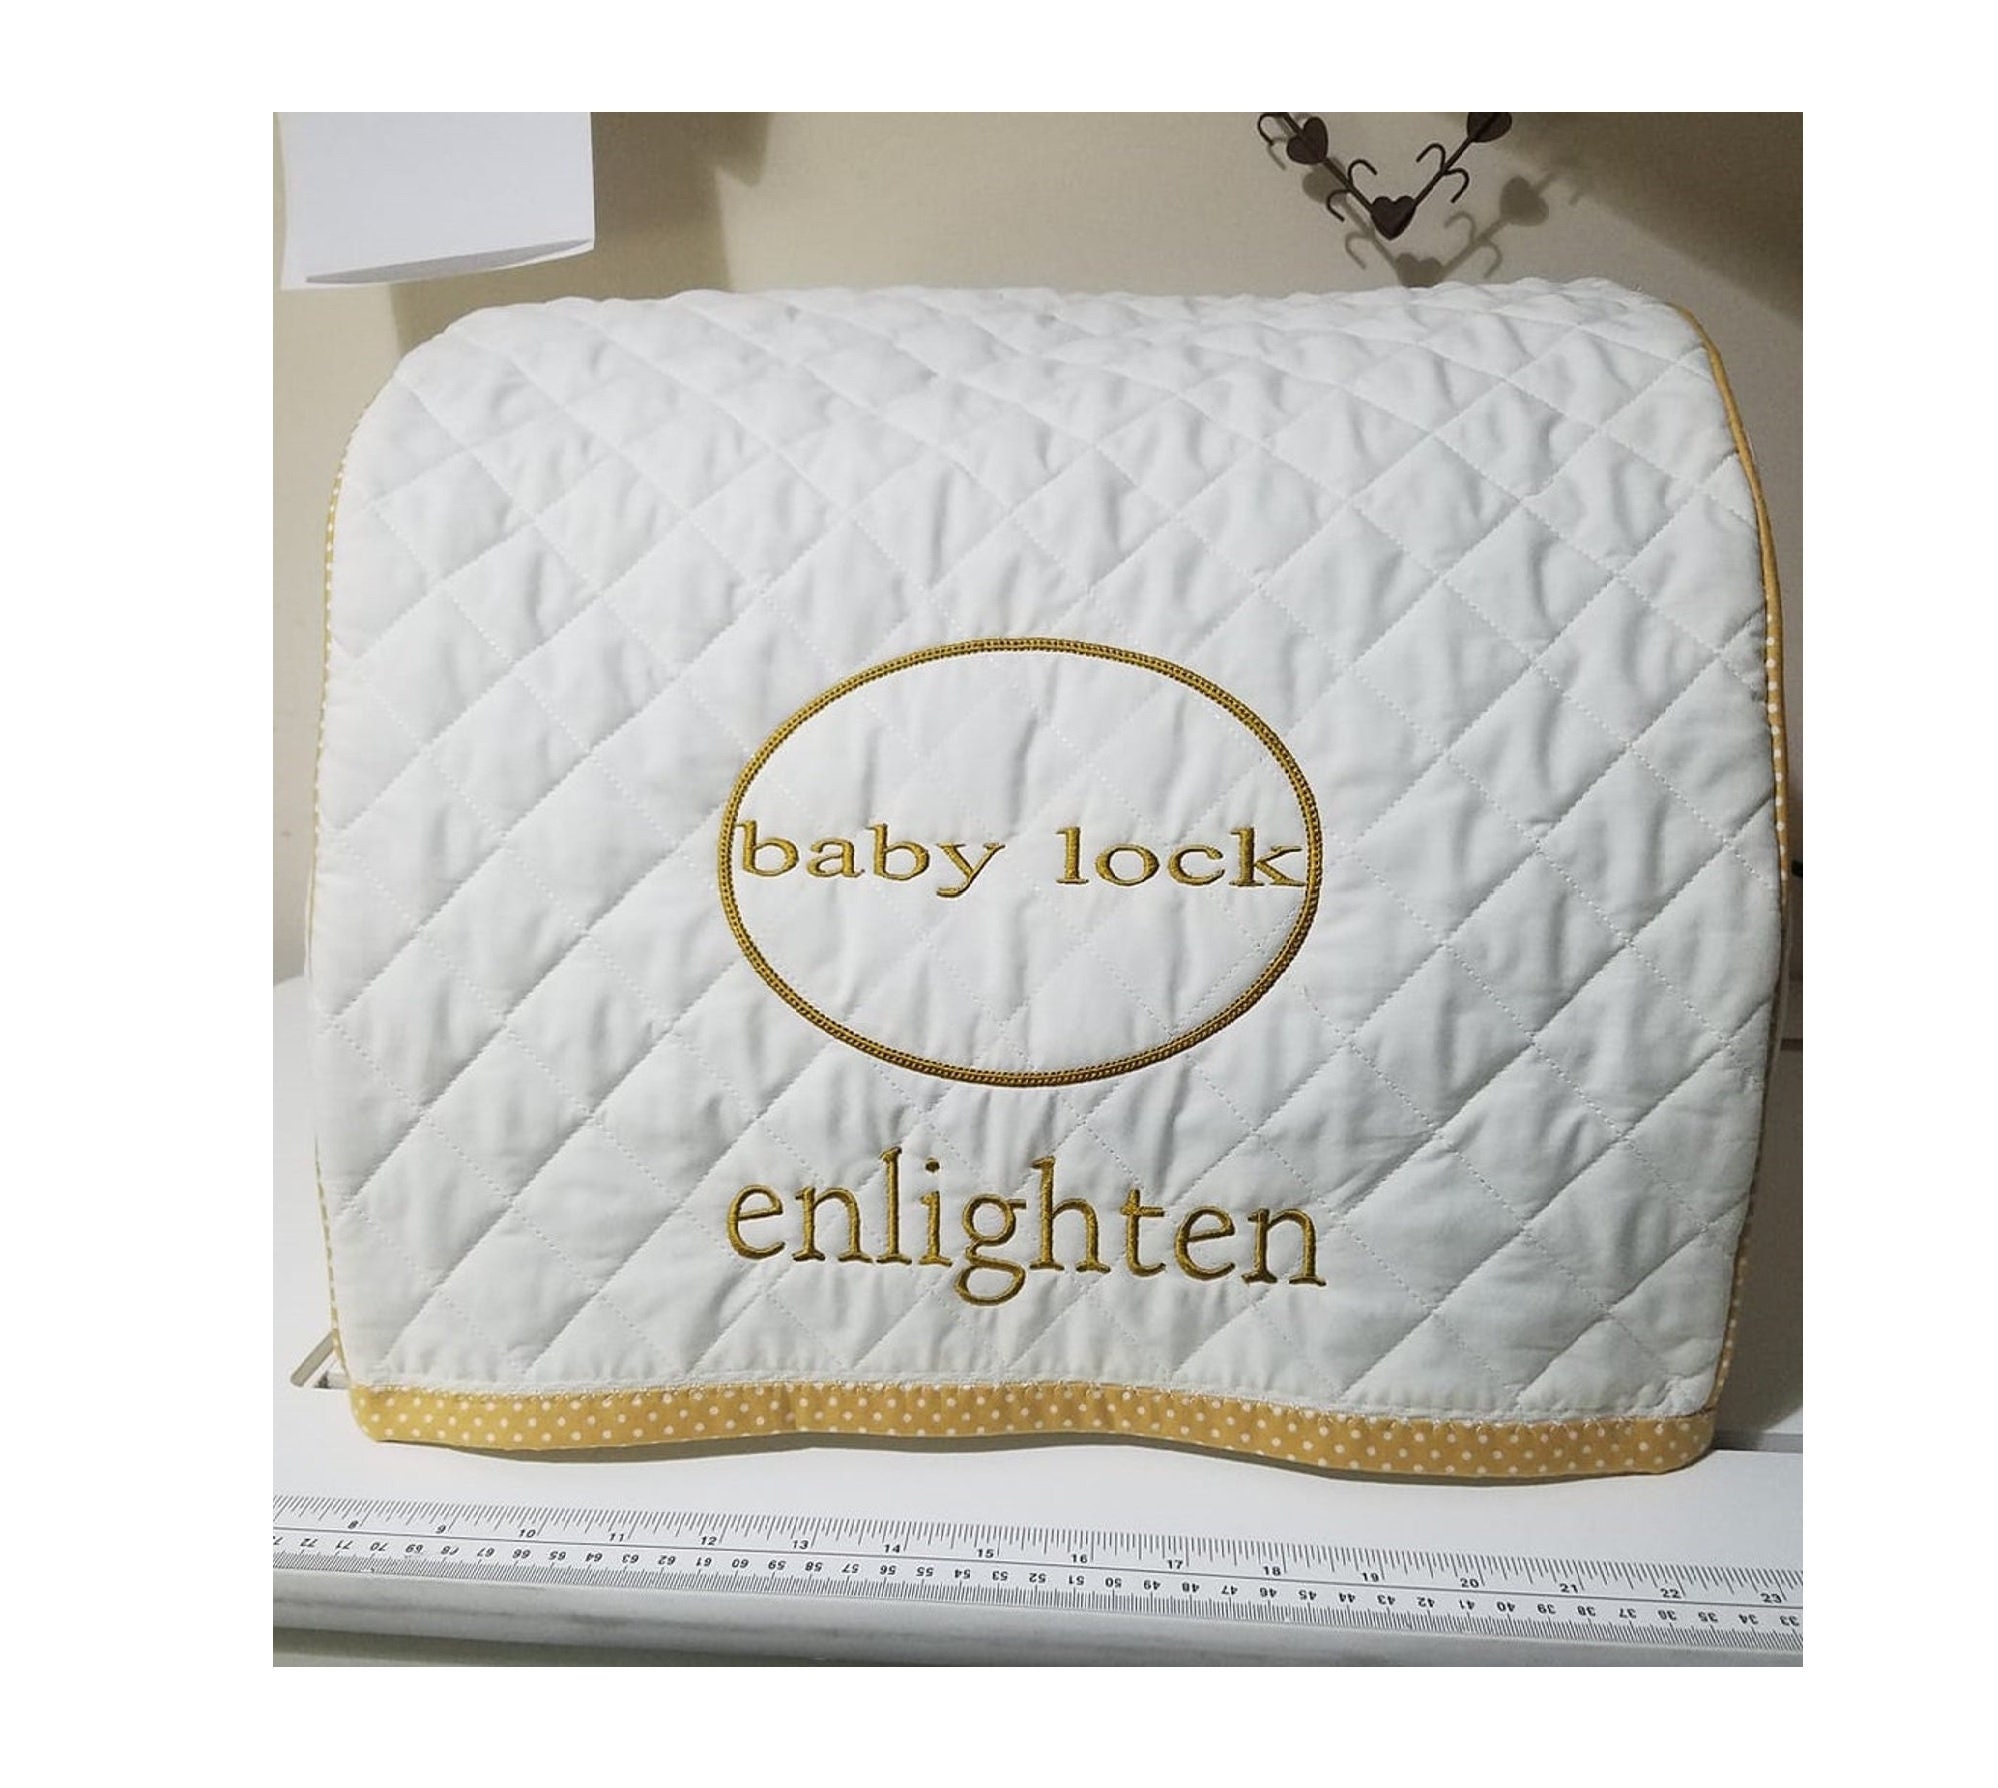 Baby lock enlighten for sale  